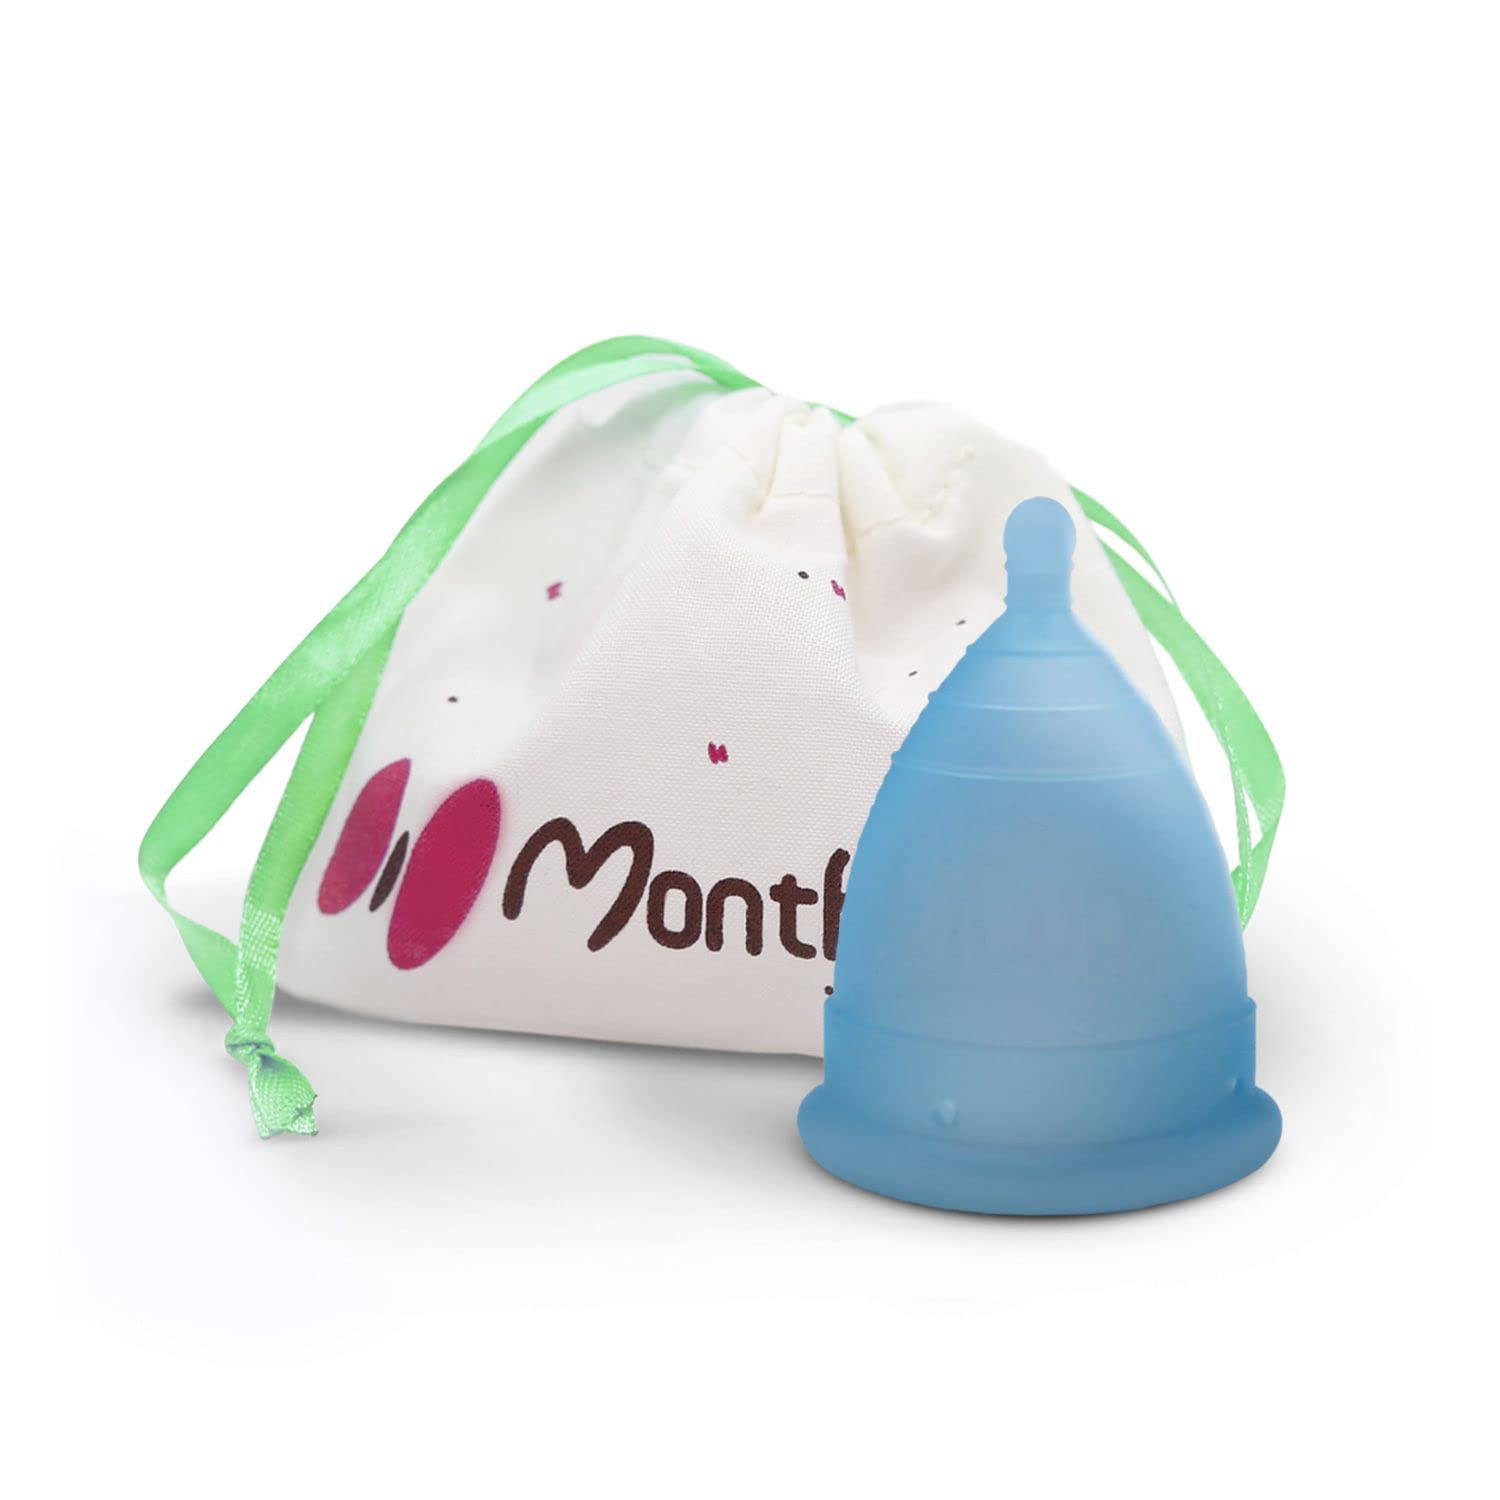 MonthlyCup - Menstruationstasse Made in Sweden | Gr. Mini | für die ersten Jahre der Periode | Wiederverwendbarer | 100% Medizinisches Silikon